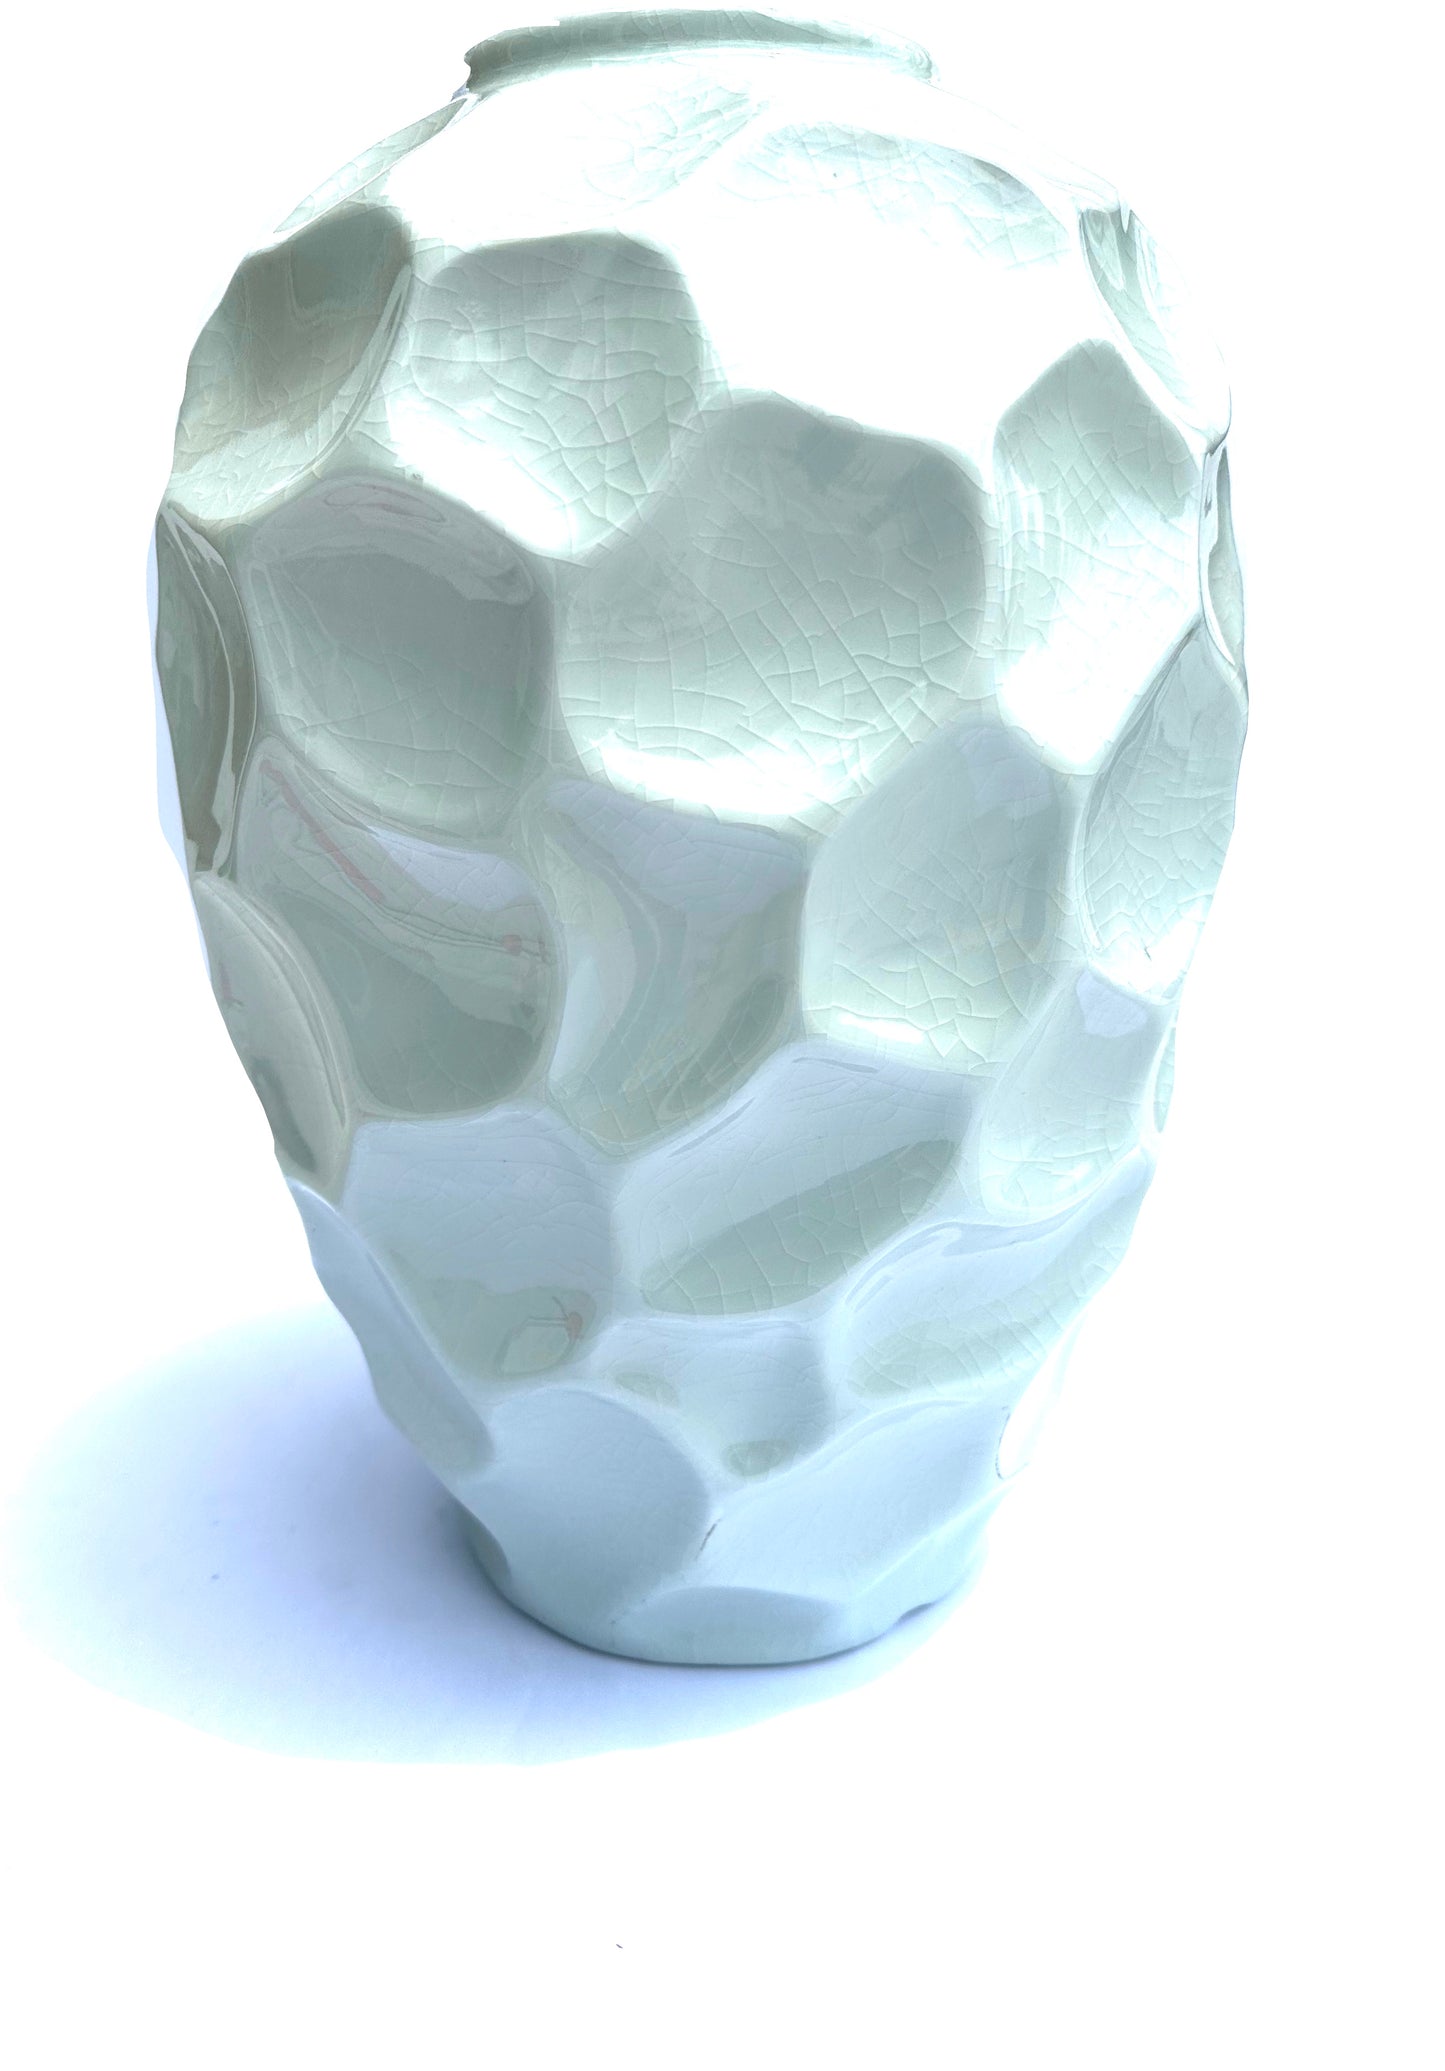 Arctic Vase